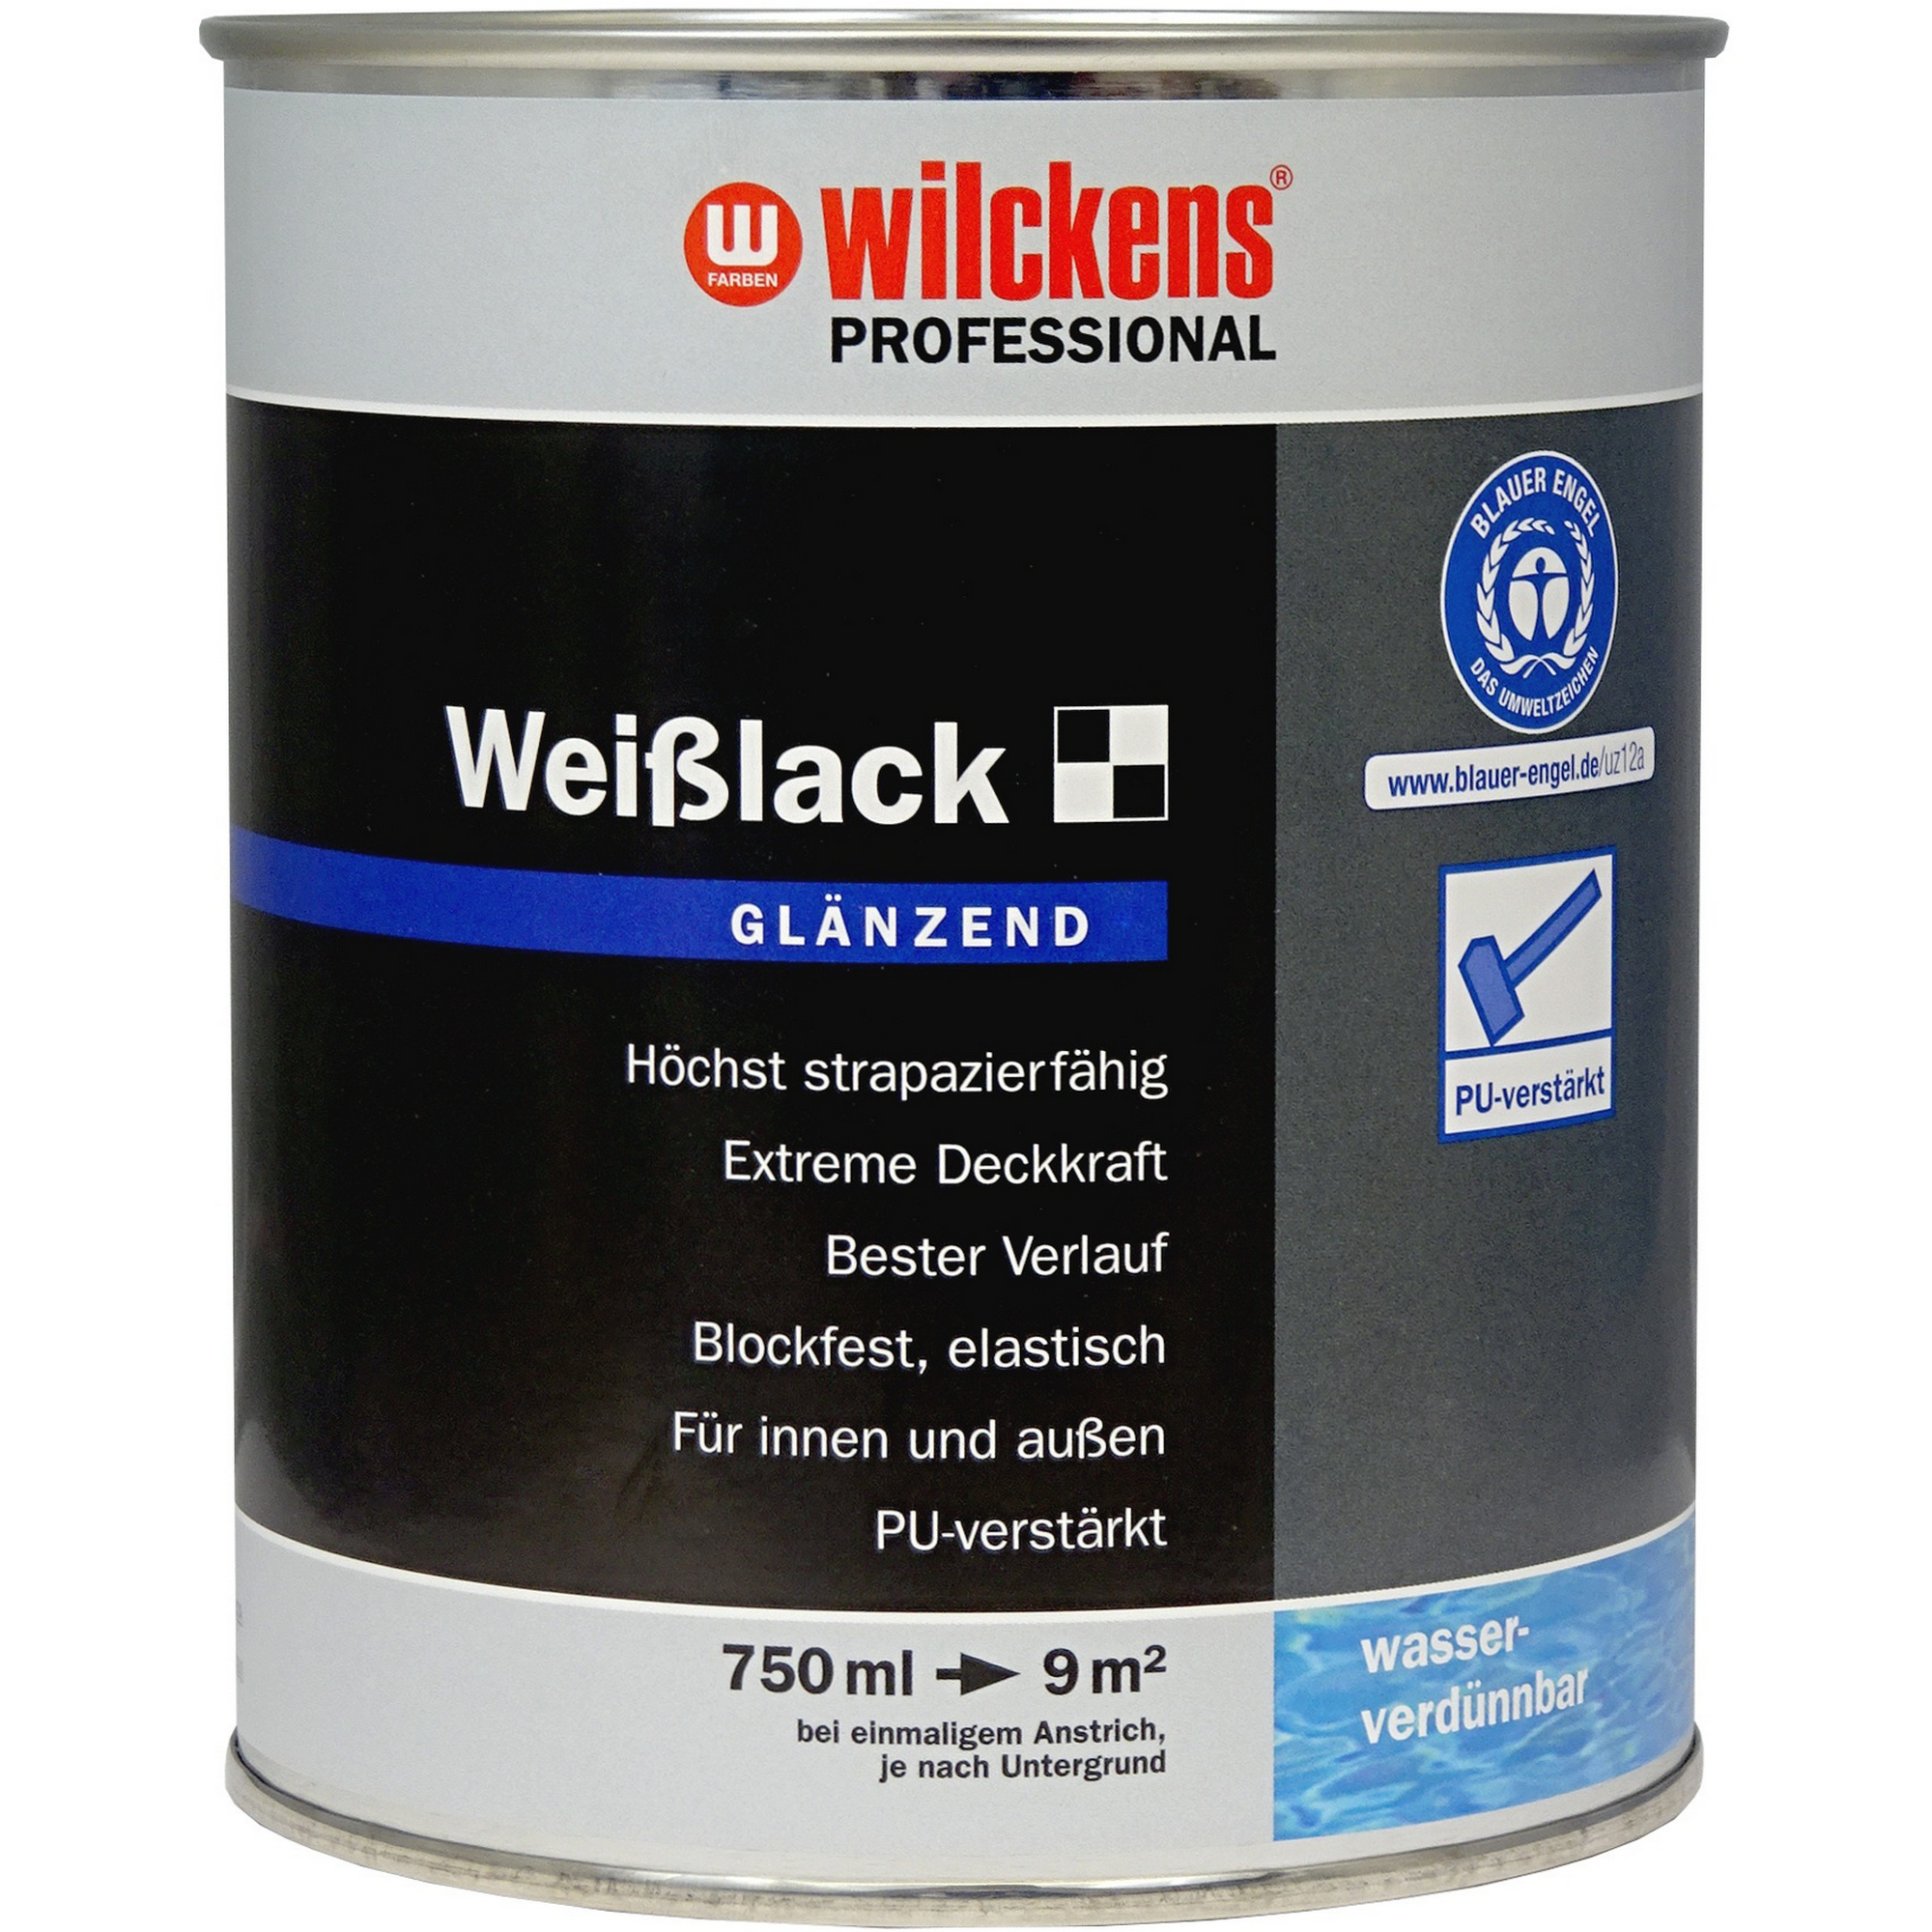 Weißlack 'Professional' weiß glänzend 750 ml + product picture